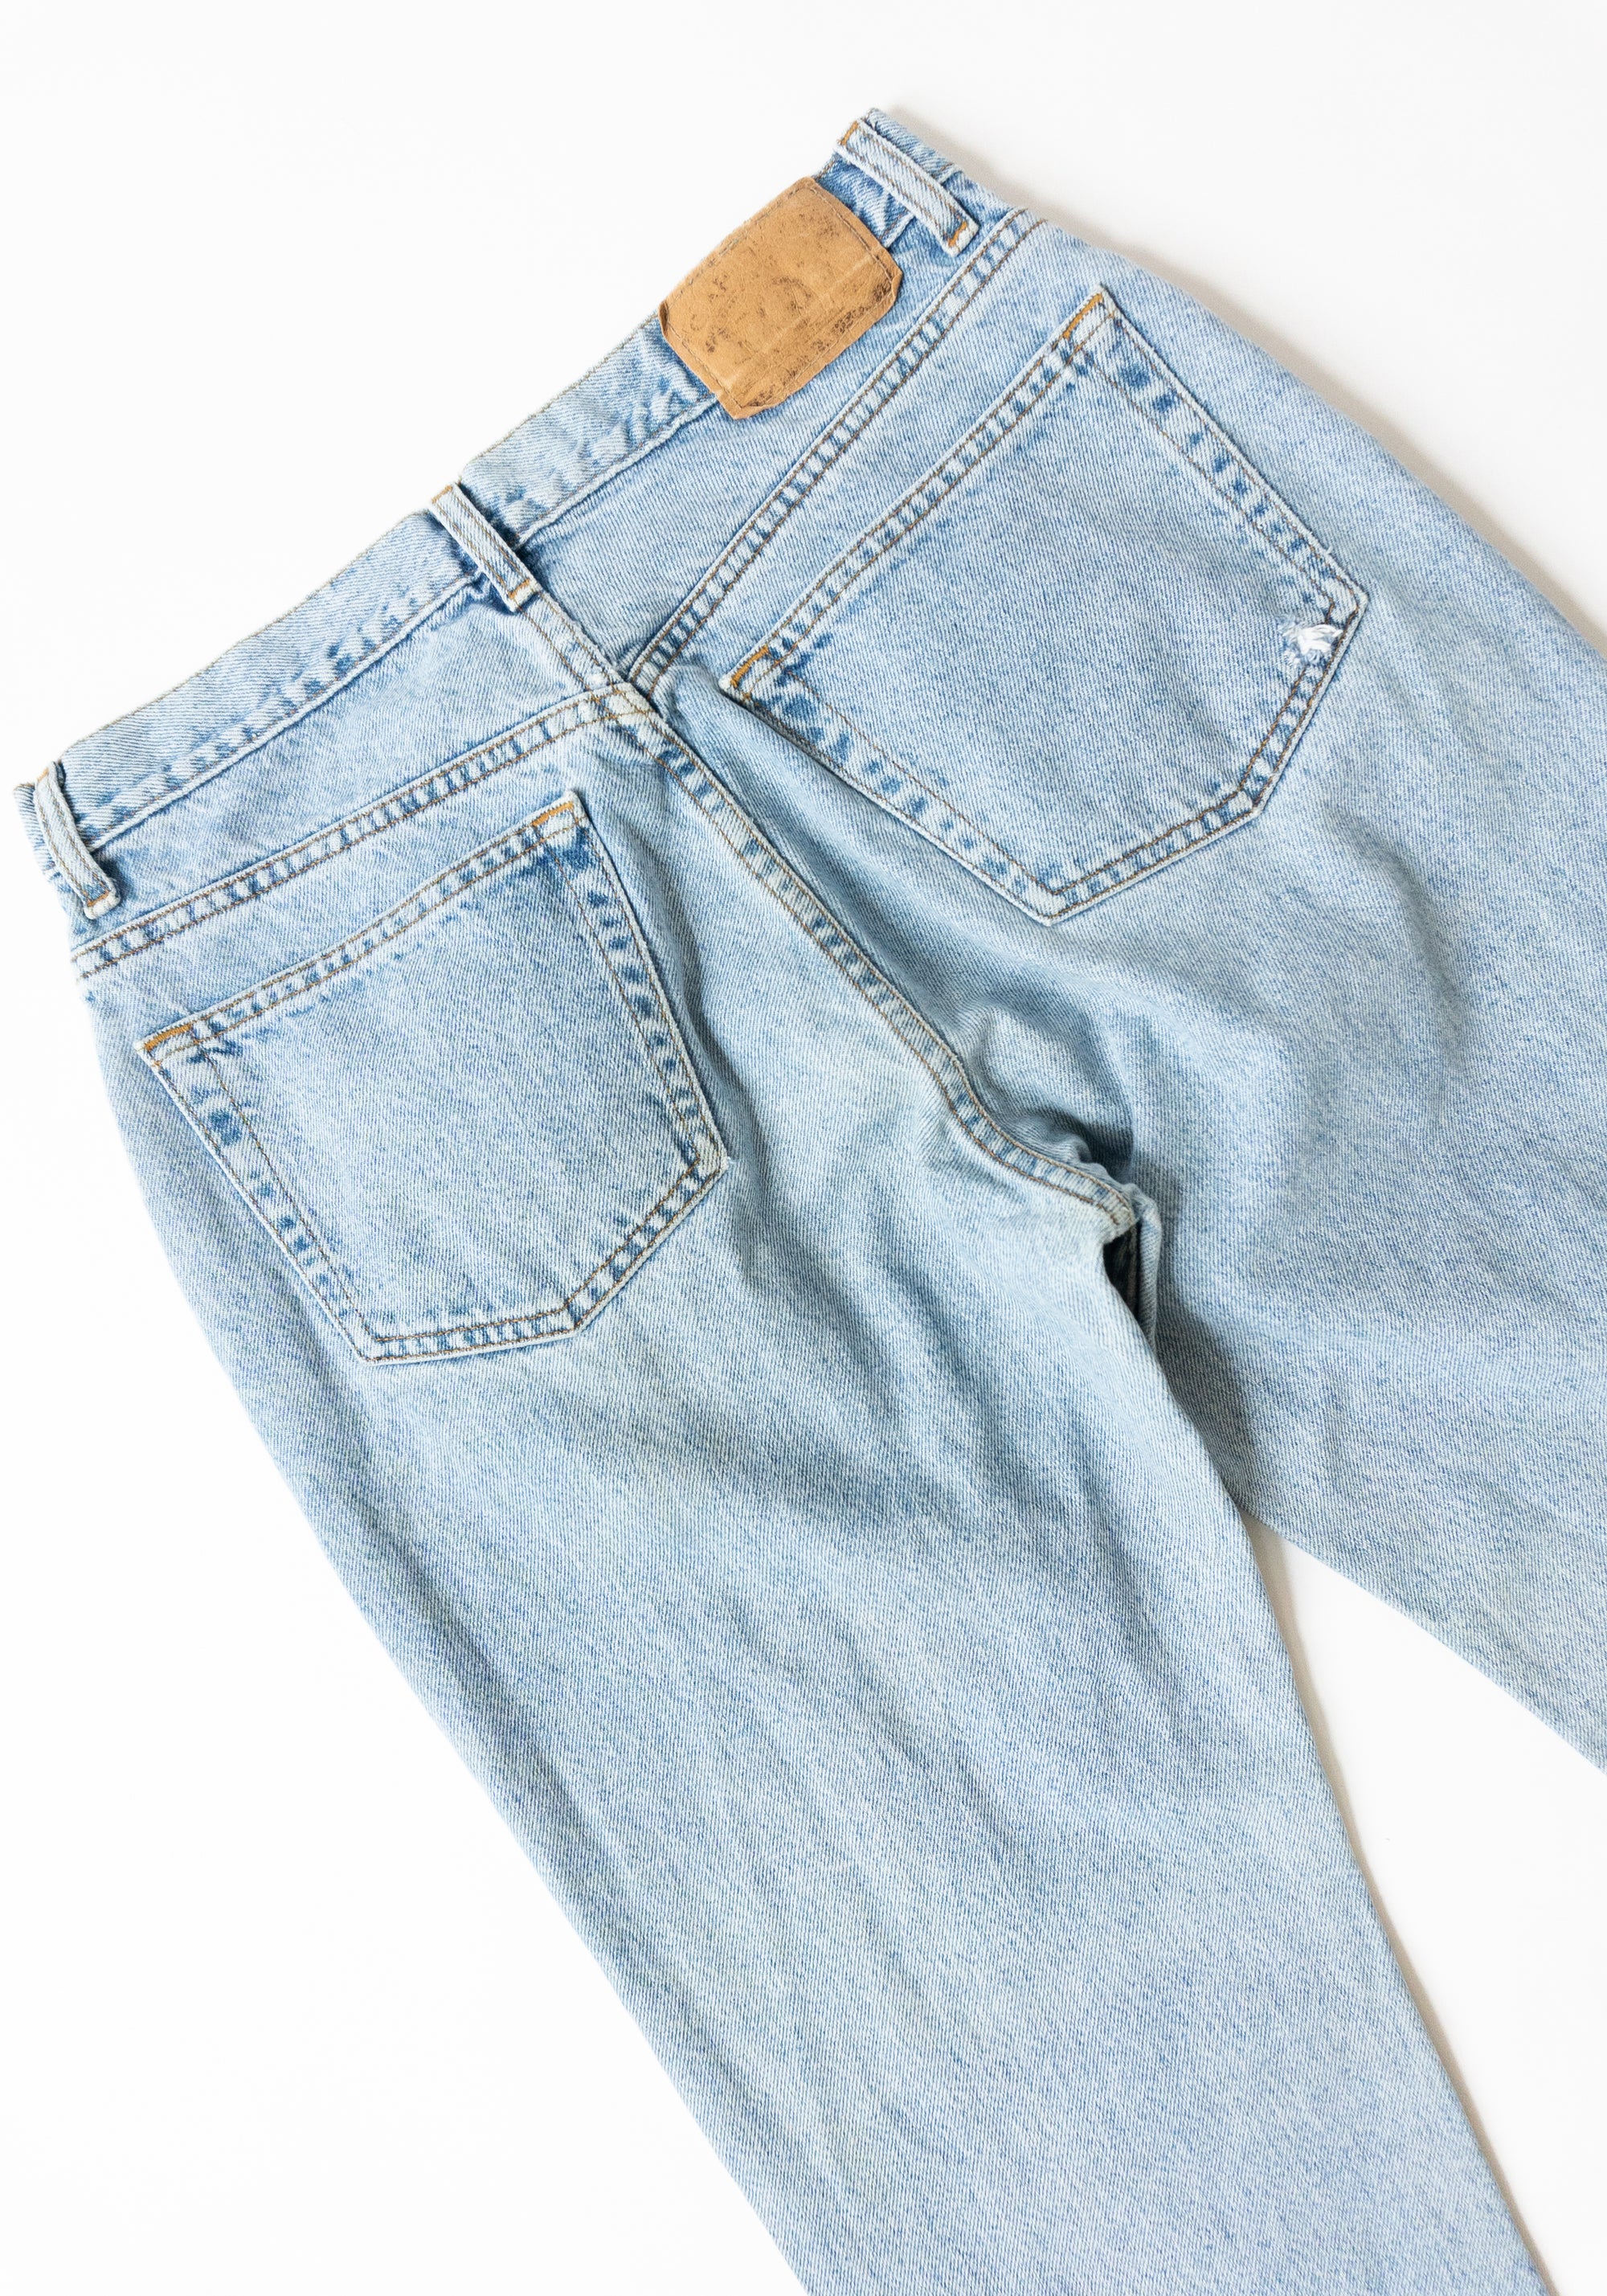 Vintage 90s Light Wash Gap Jeans